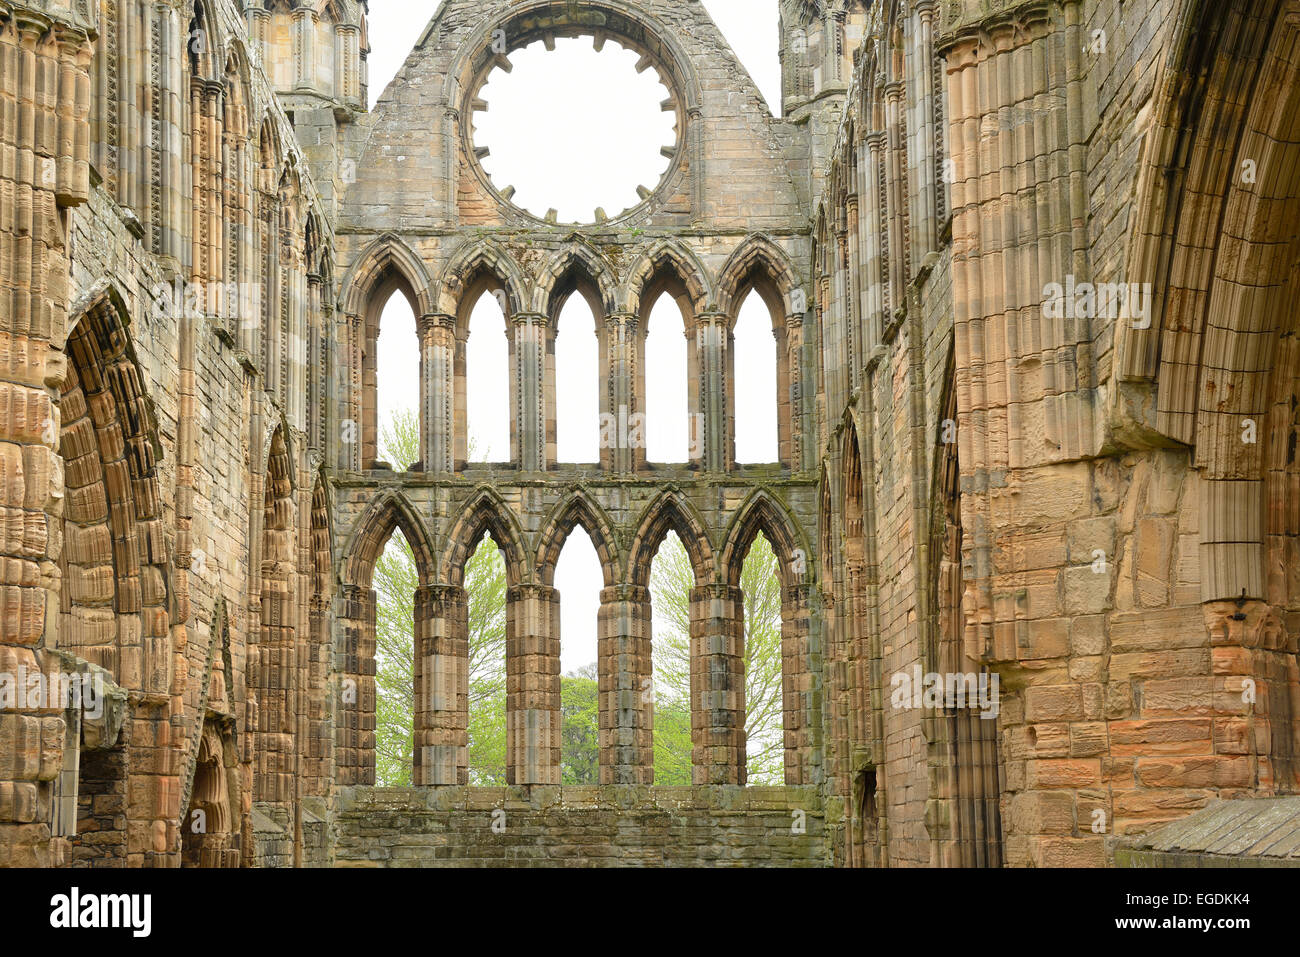 Rovine di Elgin Cathedral, Elgin Cathedral, Elgin, murene, East Coast, Scozia, Gran Bretagna, Regno Unito Foto Stock